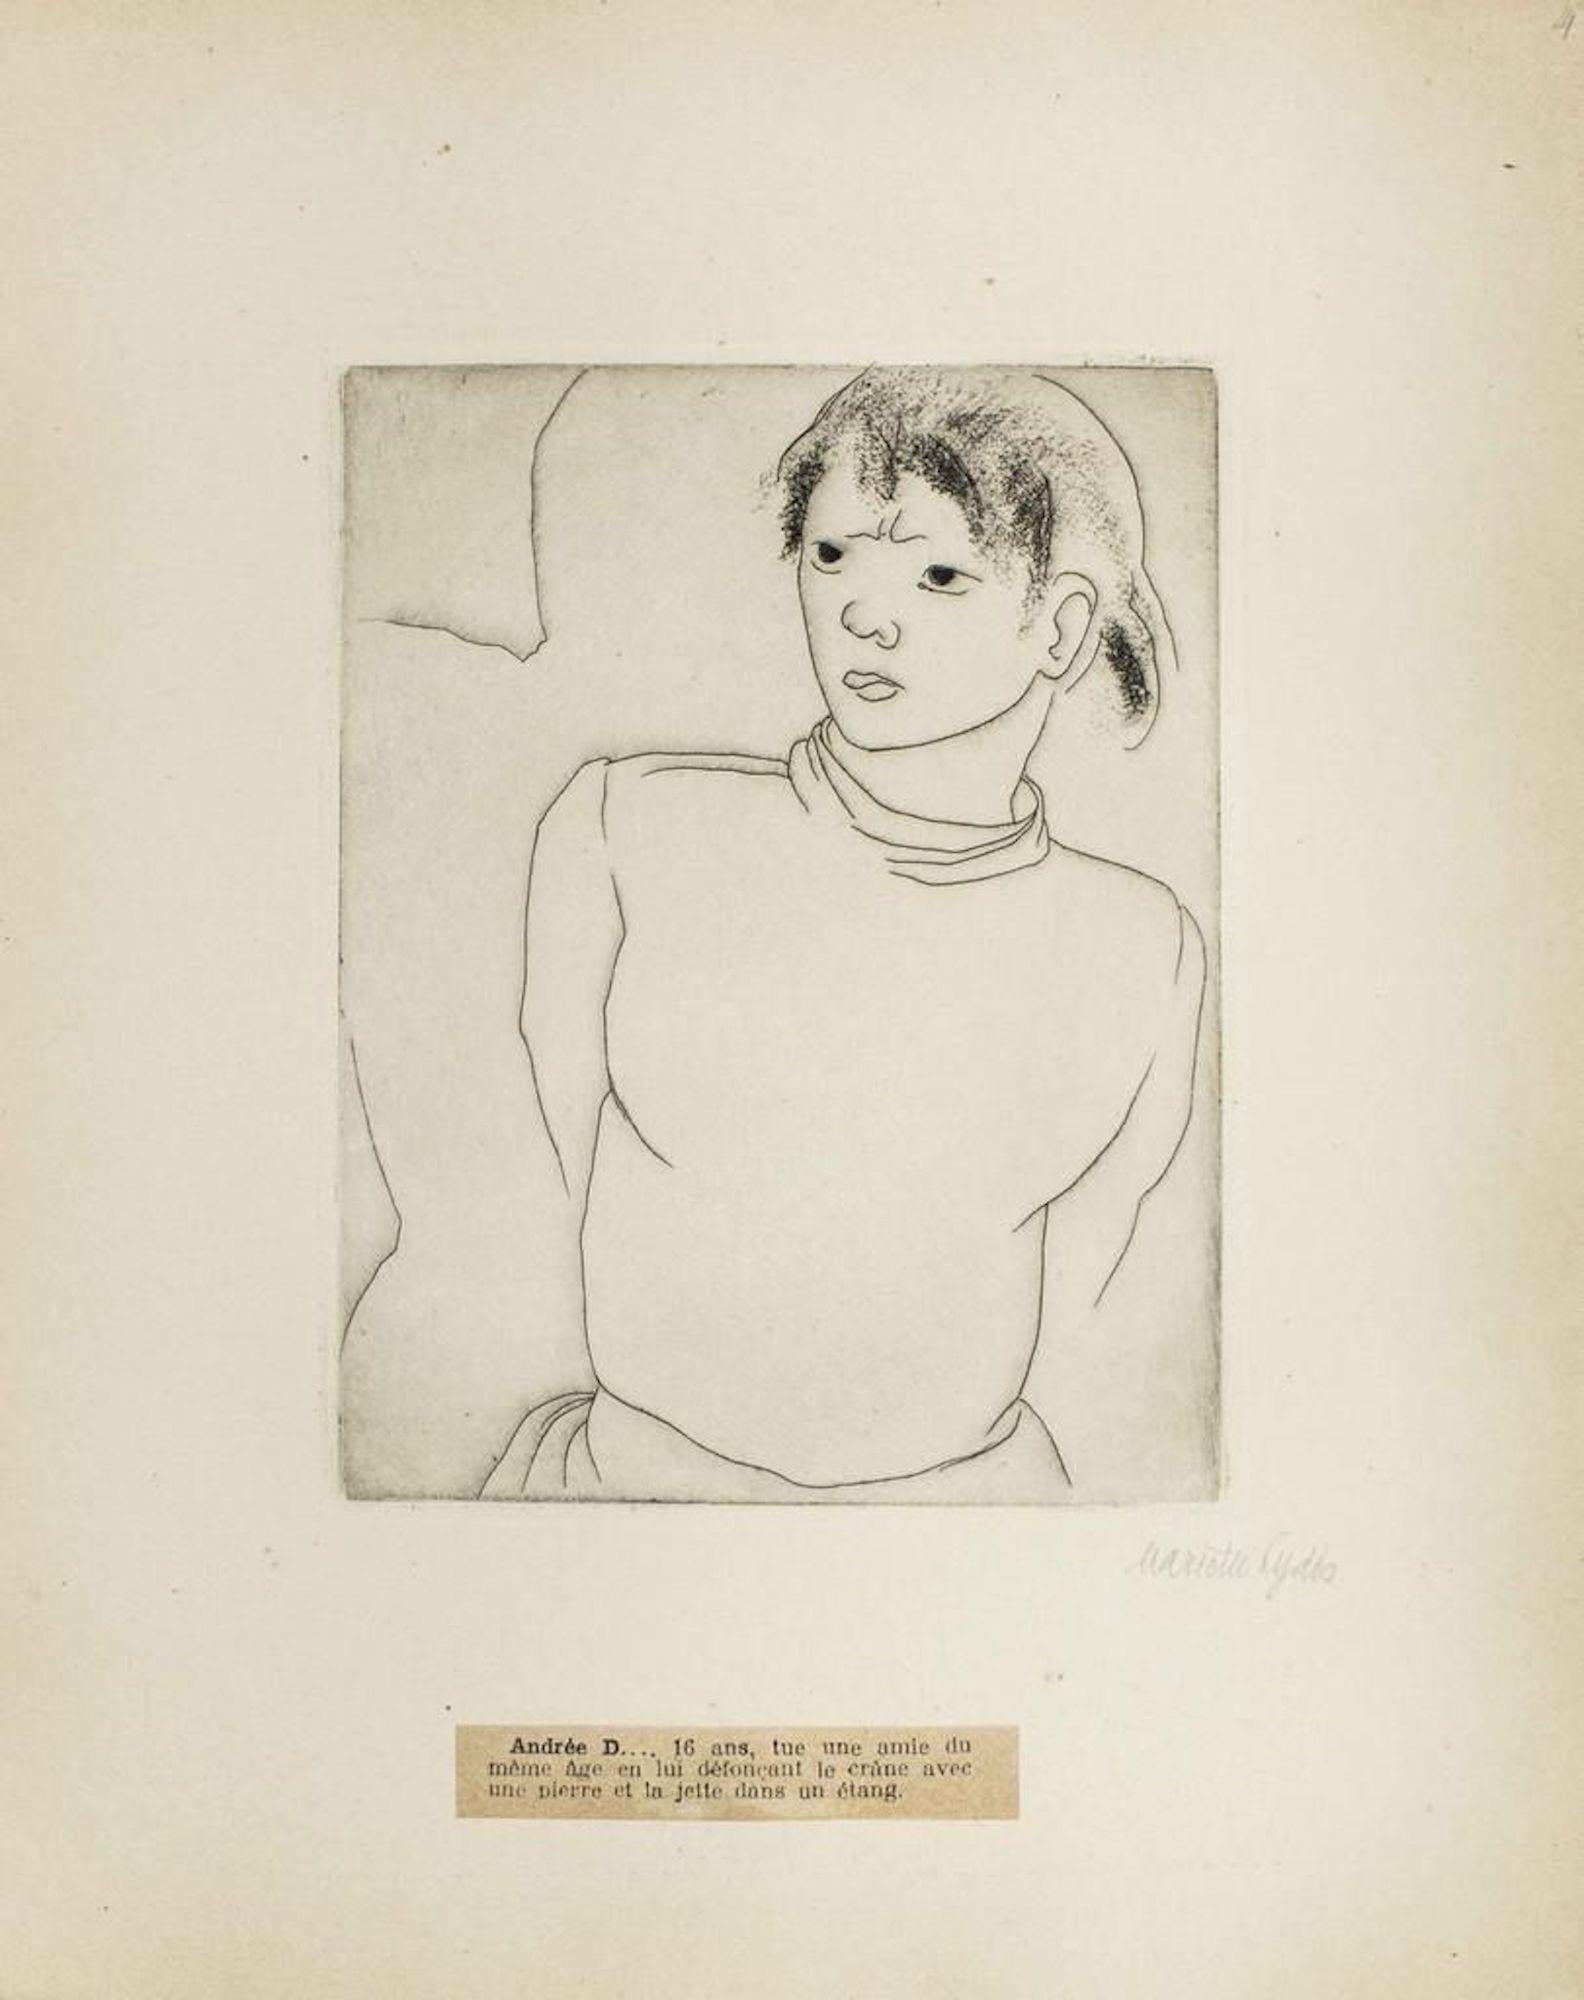 Mariette Lydis Figurative Print - Portrait of Andrée D. - Original Etching by M. Lydis - 1927